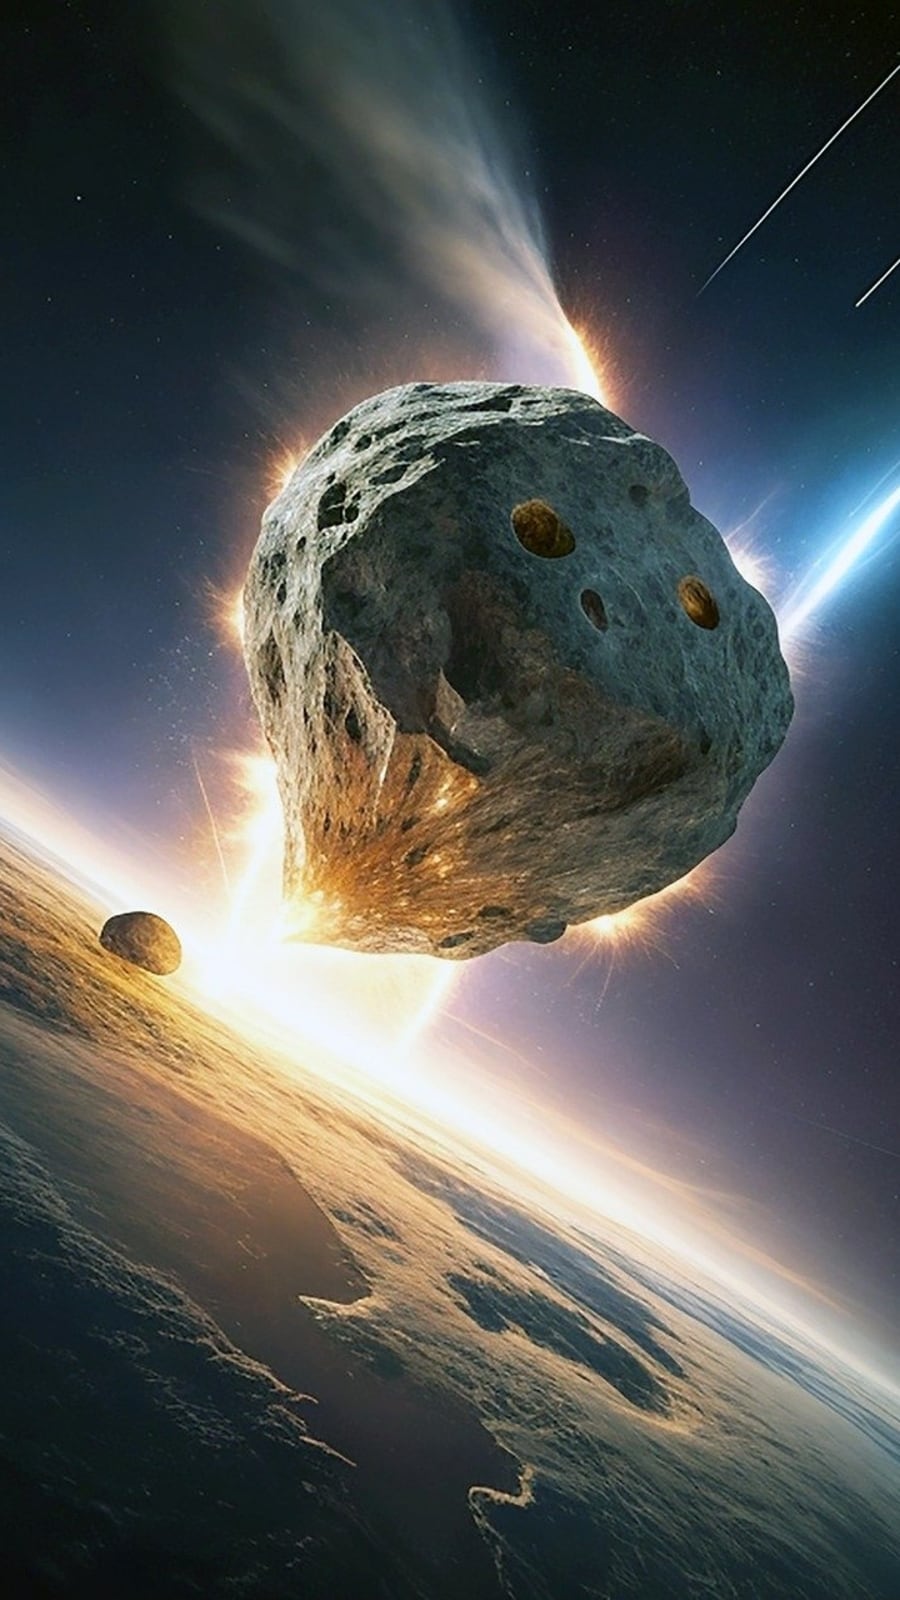 Nasa afirma que asteróide de 30 metros passará pela Terra hoje; Verifique a velocidade, distância de aproximação e muito mais